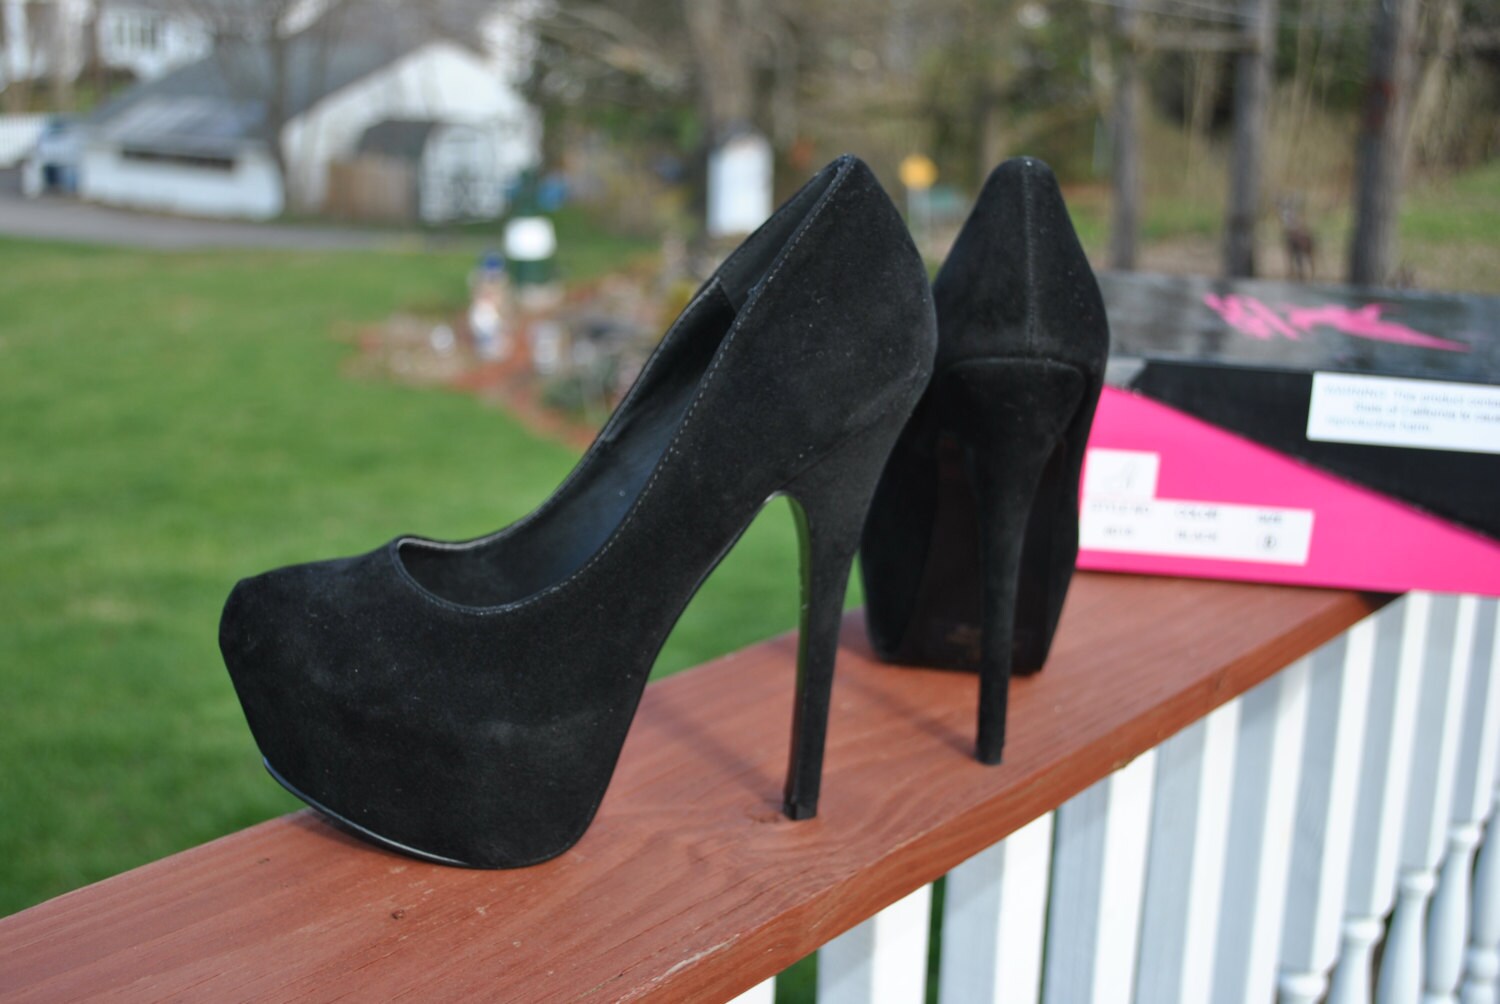 Size 8 Black Velvet High Heels Await A Custom Project For Sale Etsy